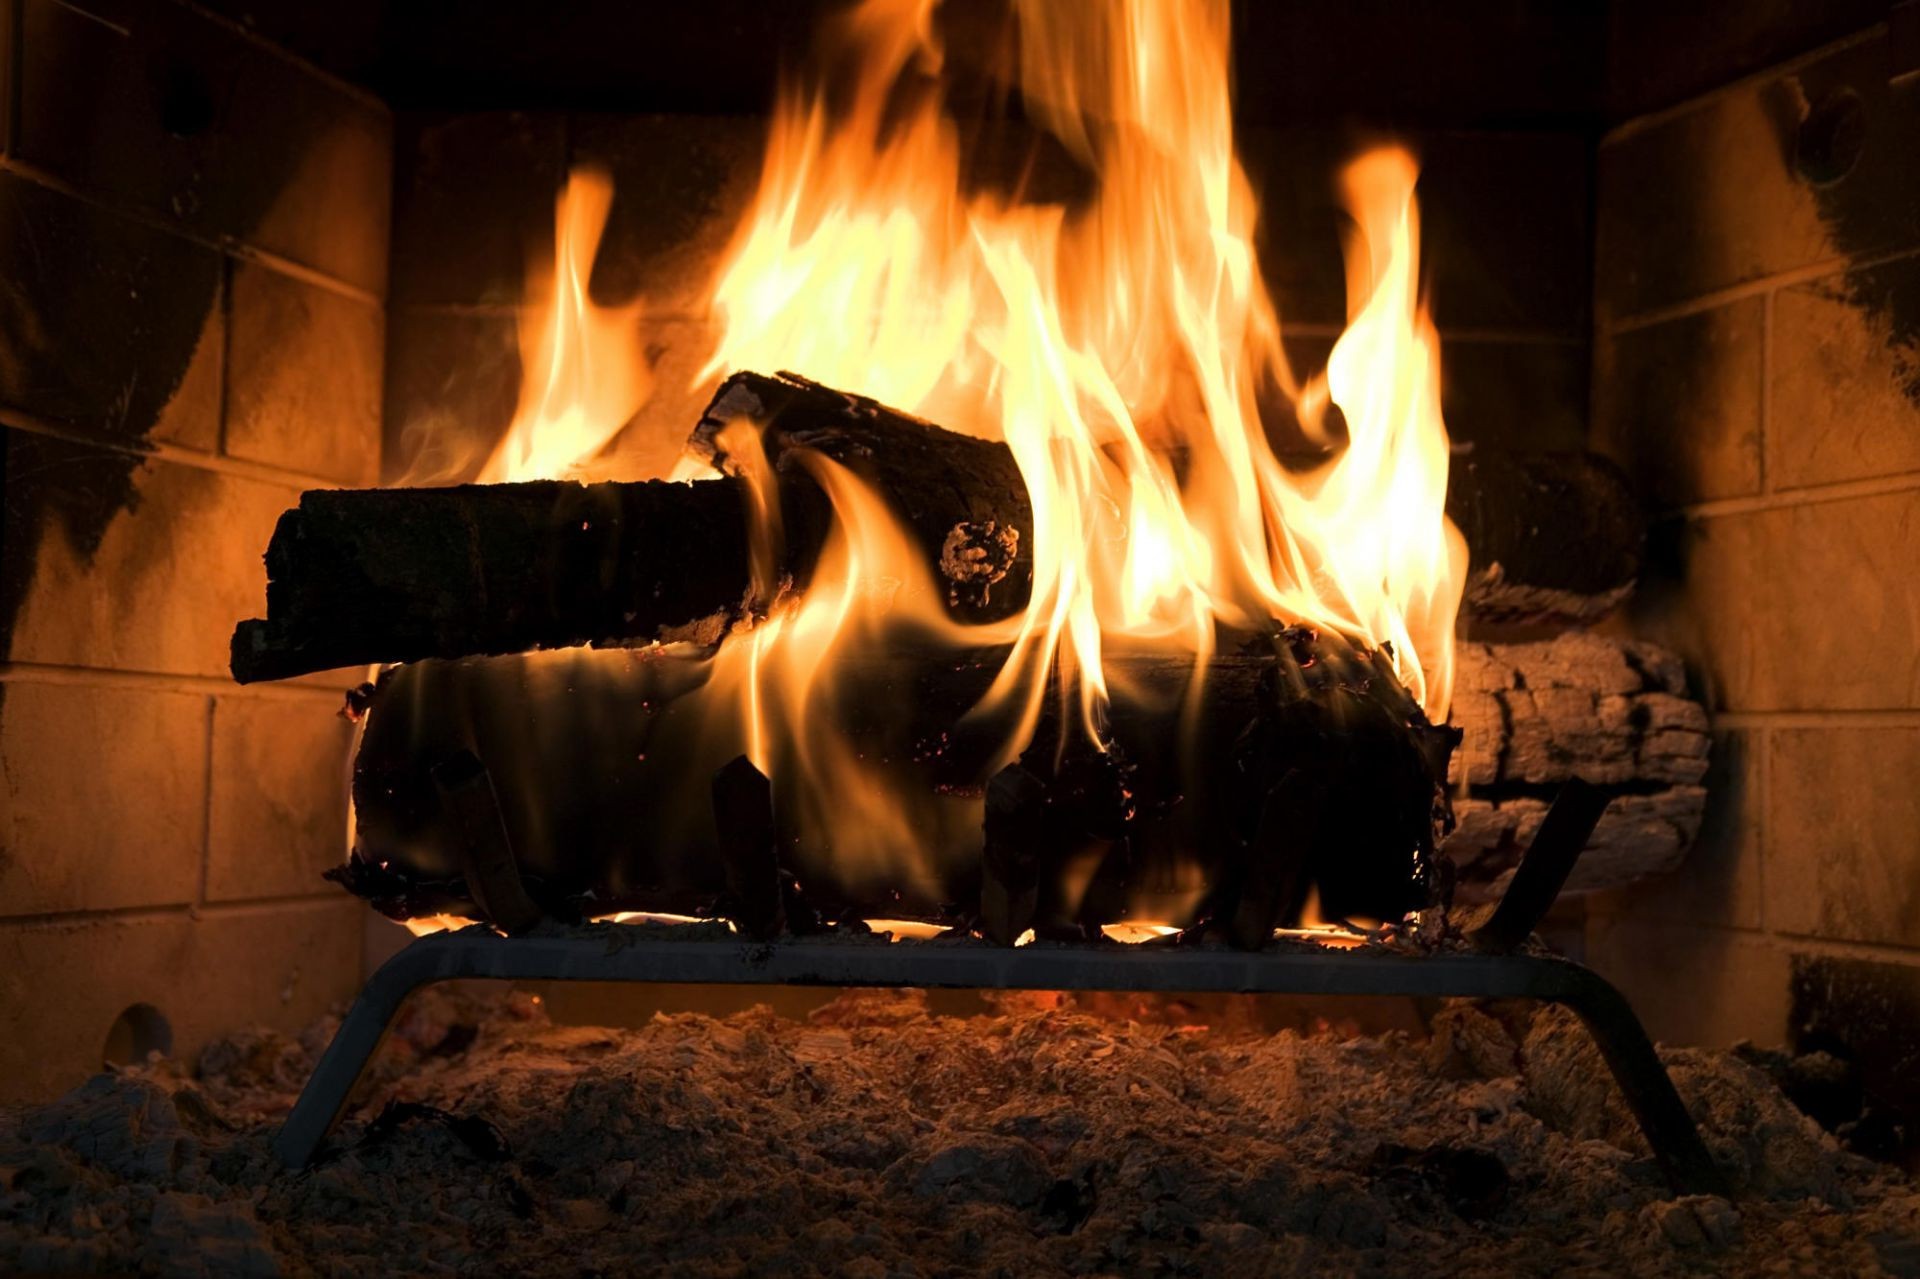 огонь пламя камин горячая тепло костер сжечь дрова уголь костра сожгли уютная тепло лагерь топлива дым опасность инферно тепло печи зажечь